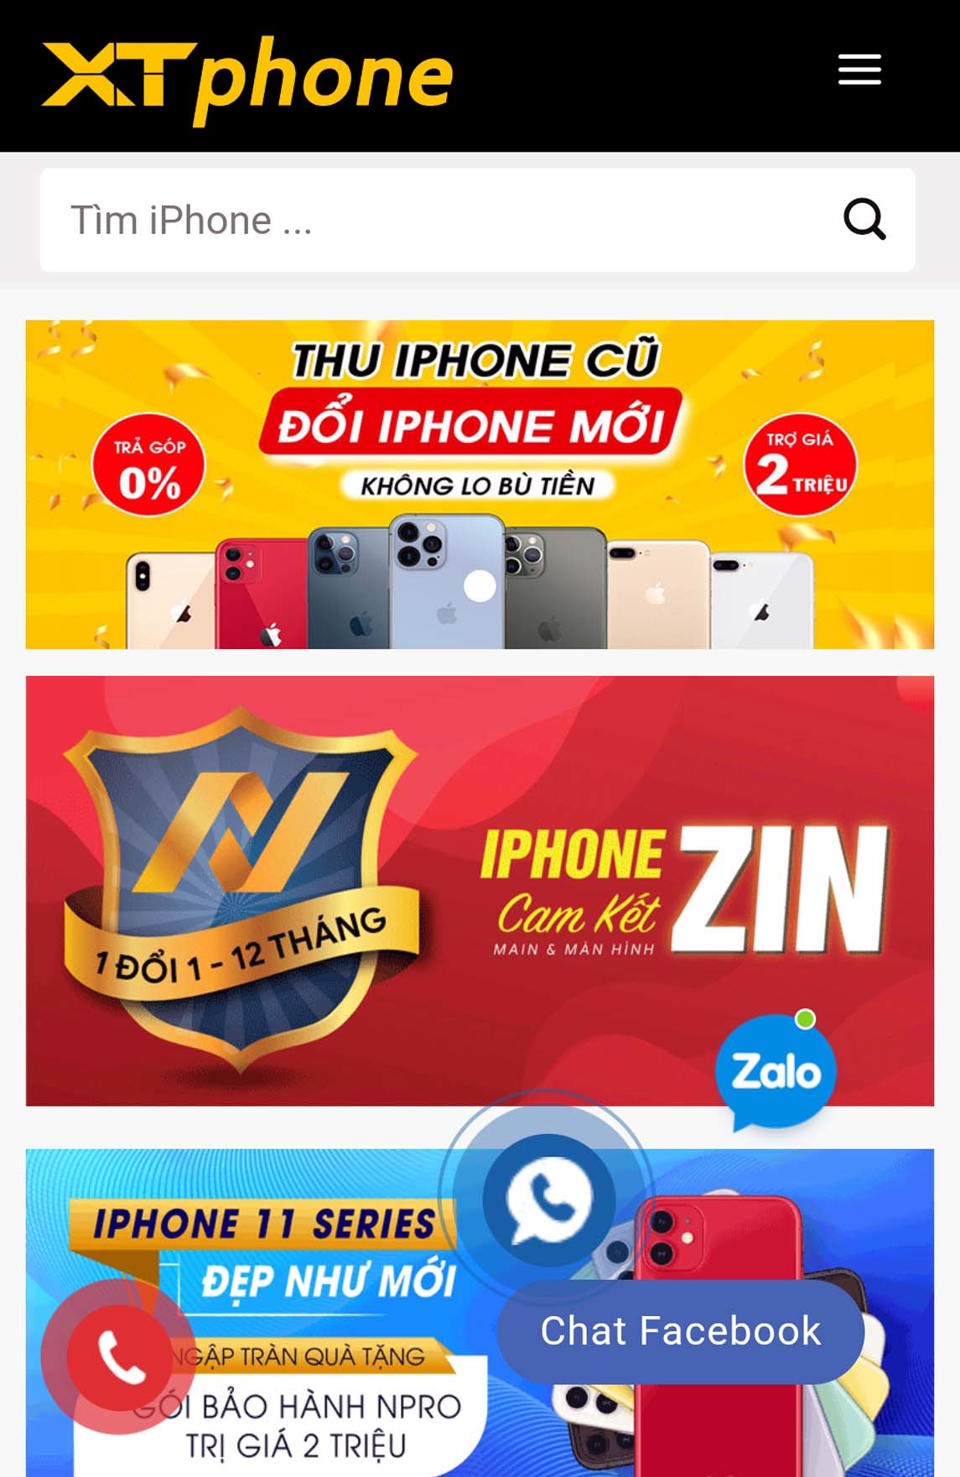 Táo Zin Sài Gòn - Hệ Thống Cửa Hàng Bán iPhone, Samsung